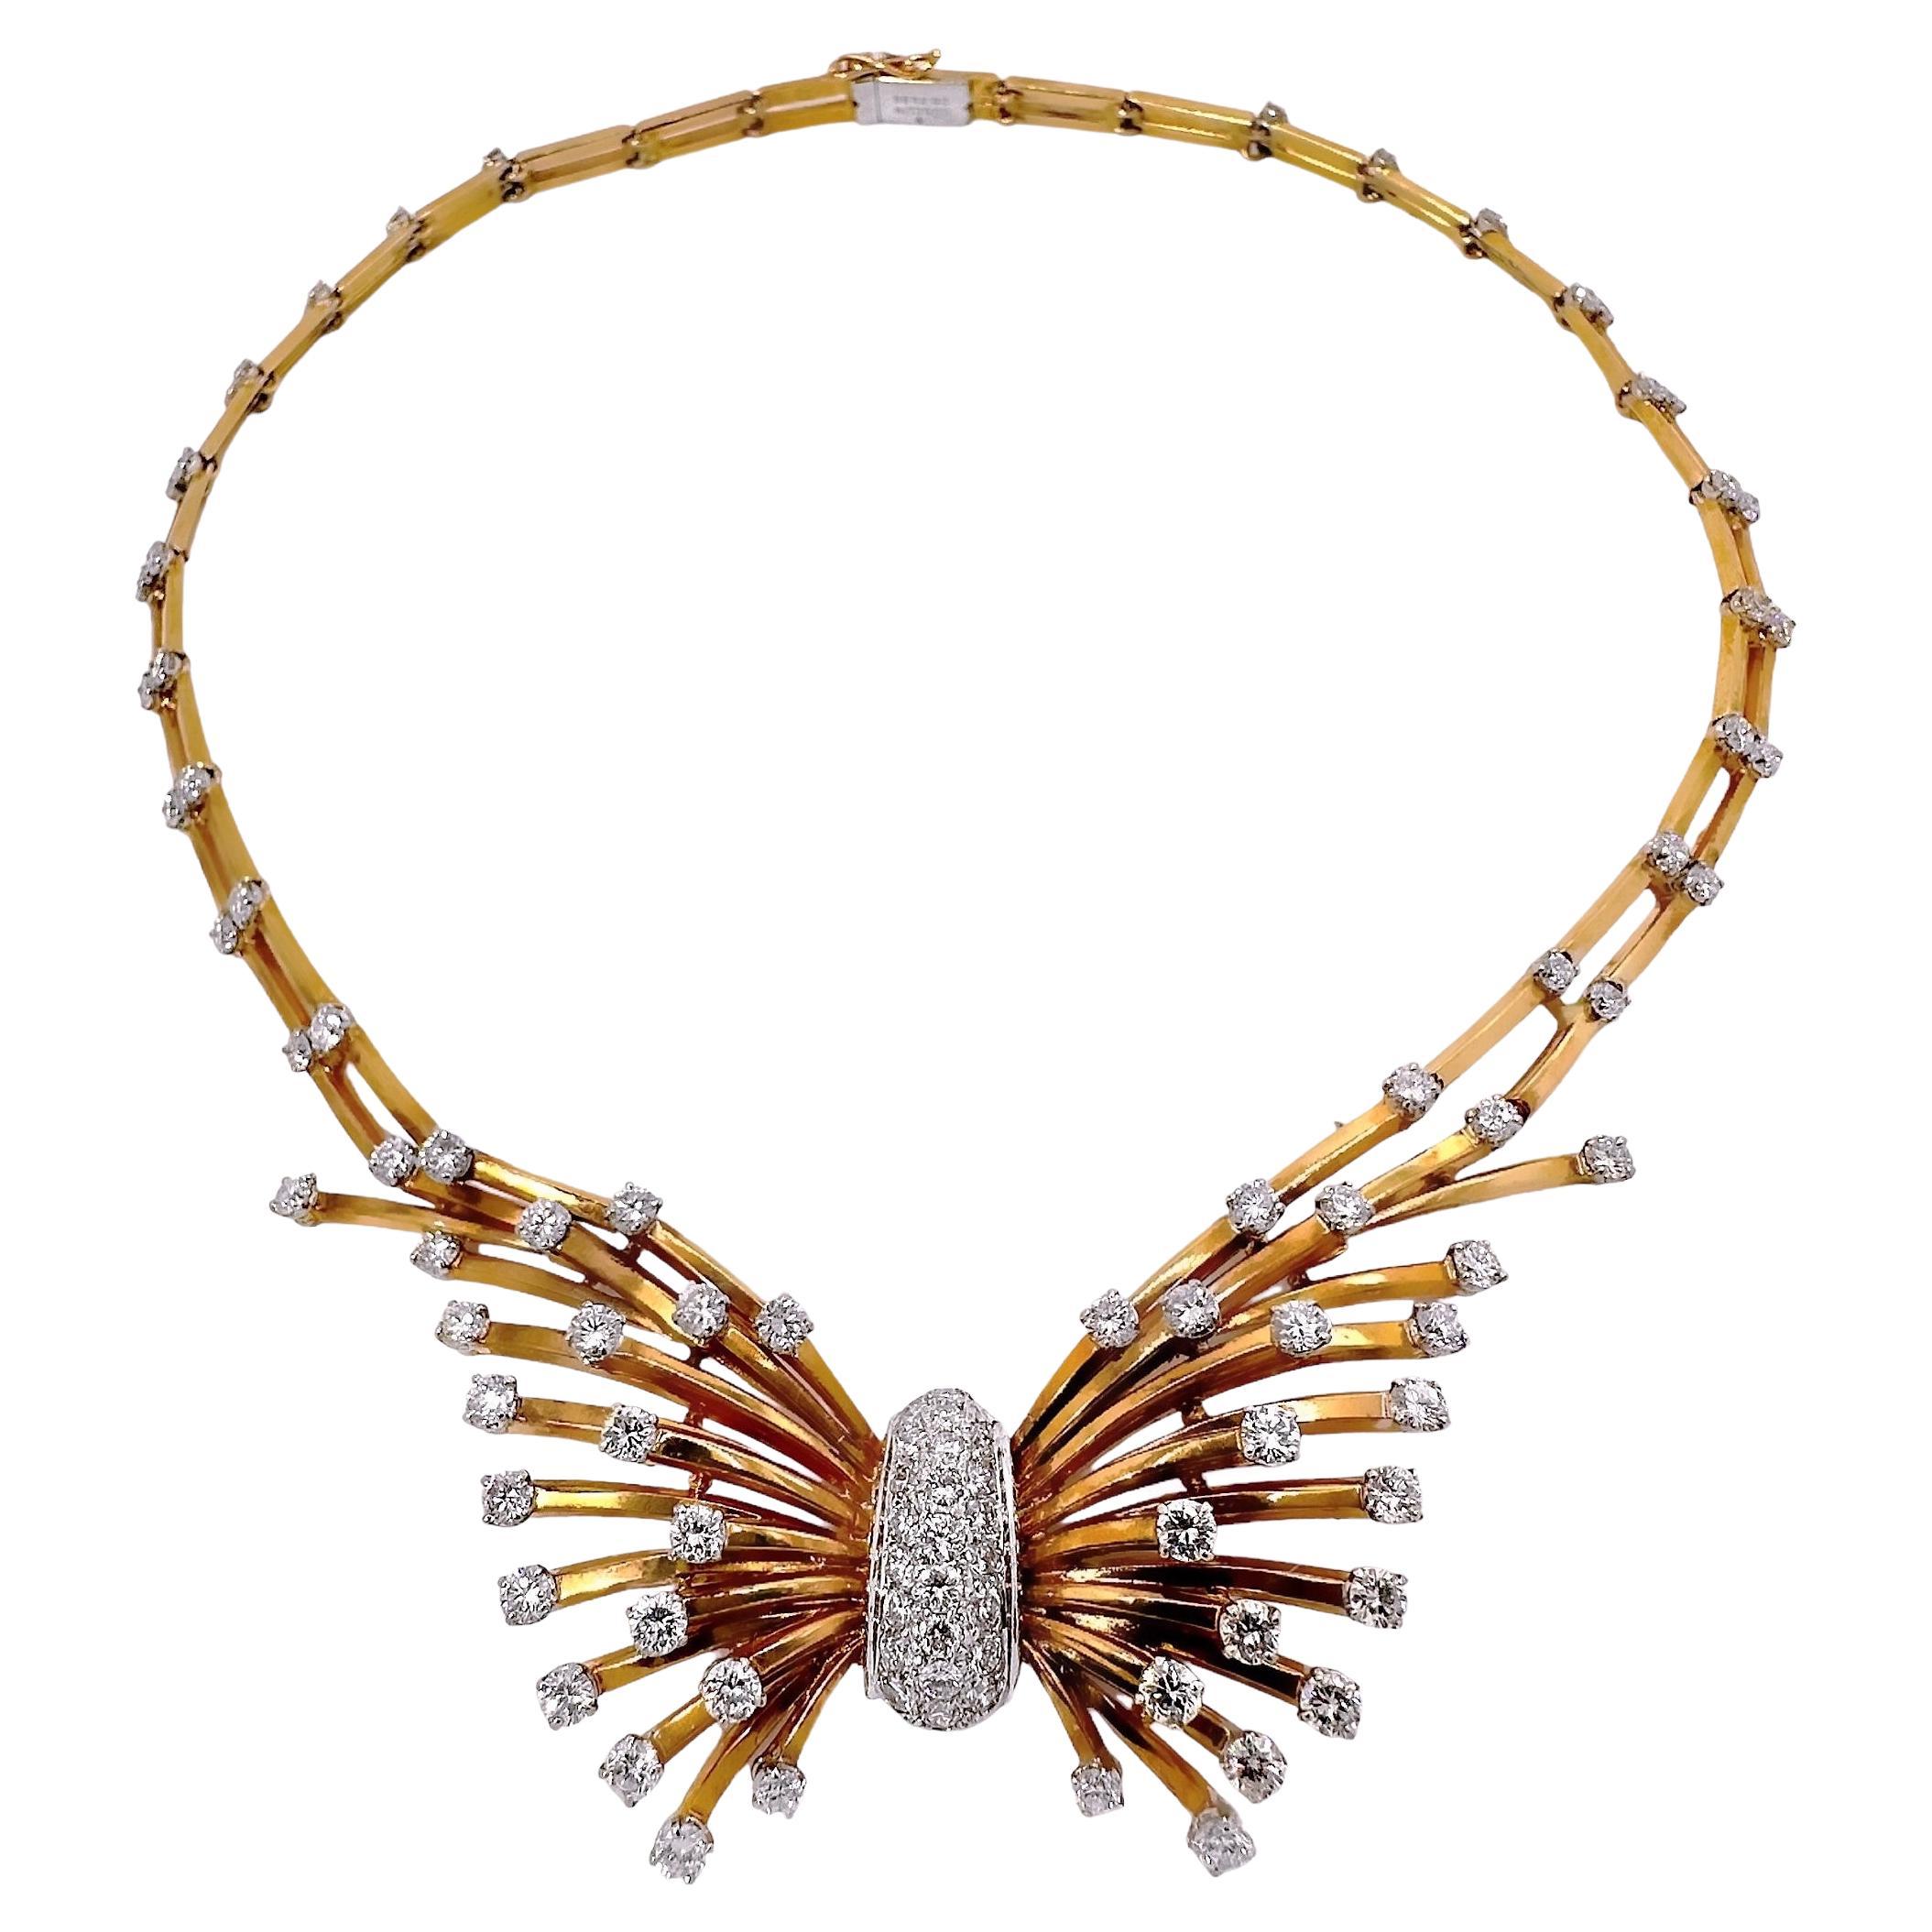 Diese unglaubliche Halskette, die in den 1940er Jahren von Gubelin in der Schweiz kreiert wurde, zeugt von Eleganz und stiller Opulenz. Es ist ein Schmuckstück, das man unbedingt in der Hand halten muss, um zu verstehen, mit welch unglaublicher